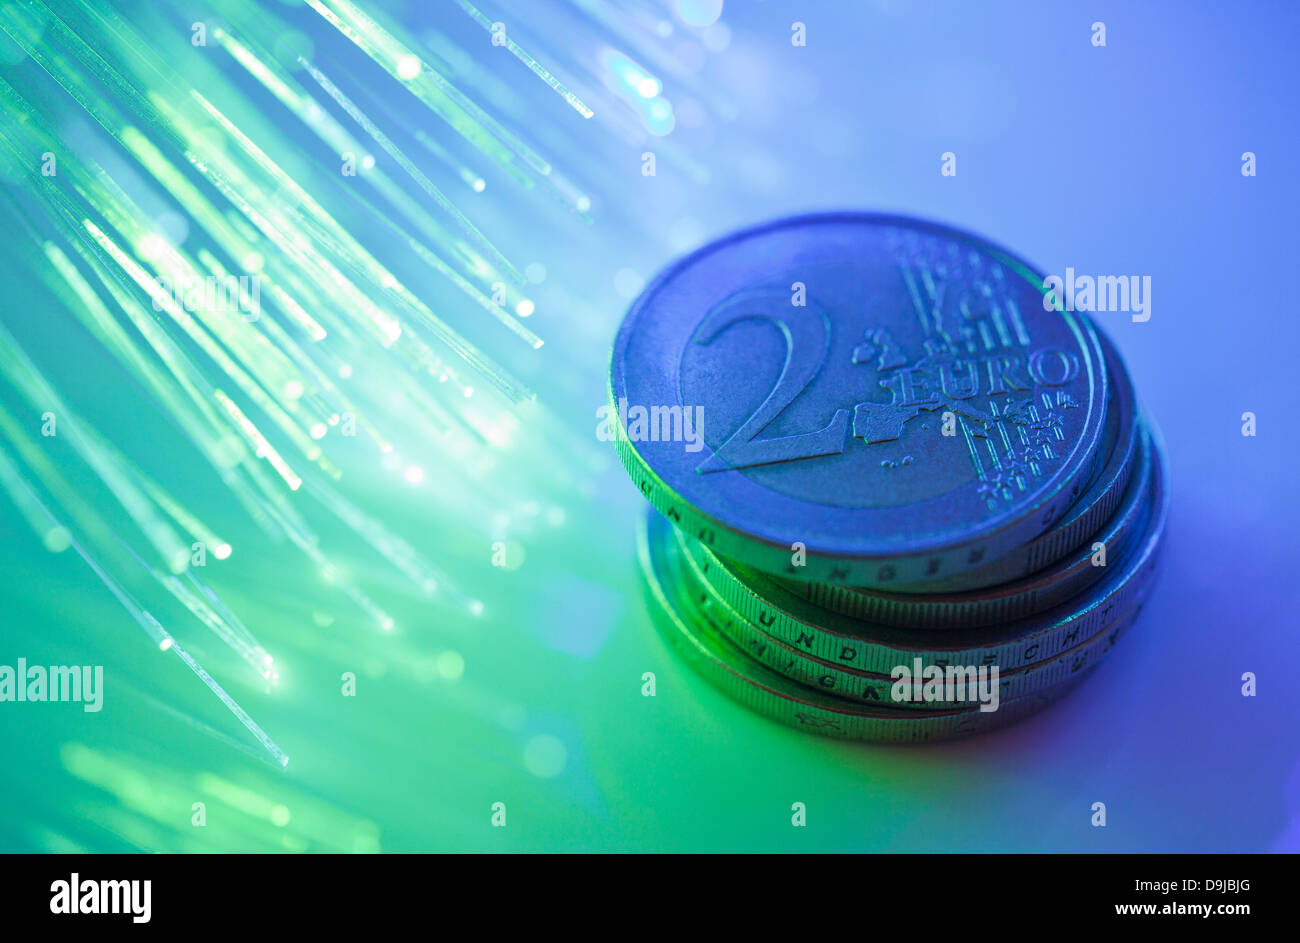 Euro coins on fiber optics background Stock Photo